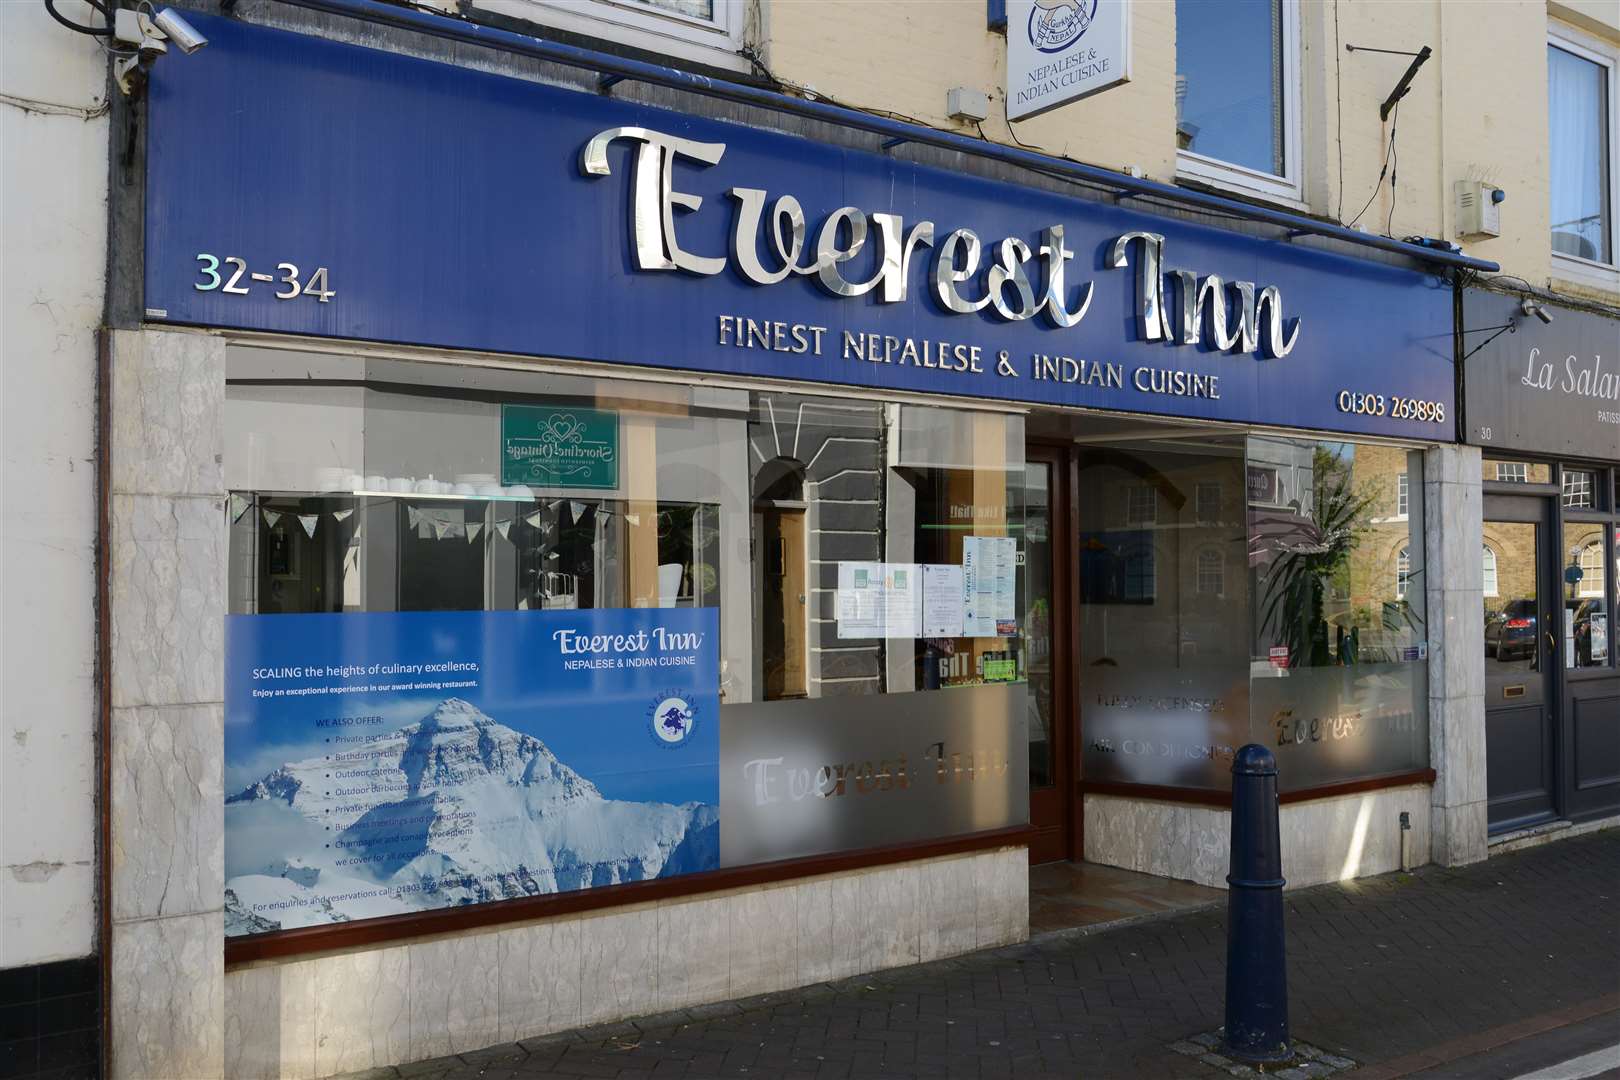 The Everest Inn at Hythe High Street.